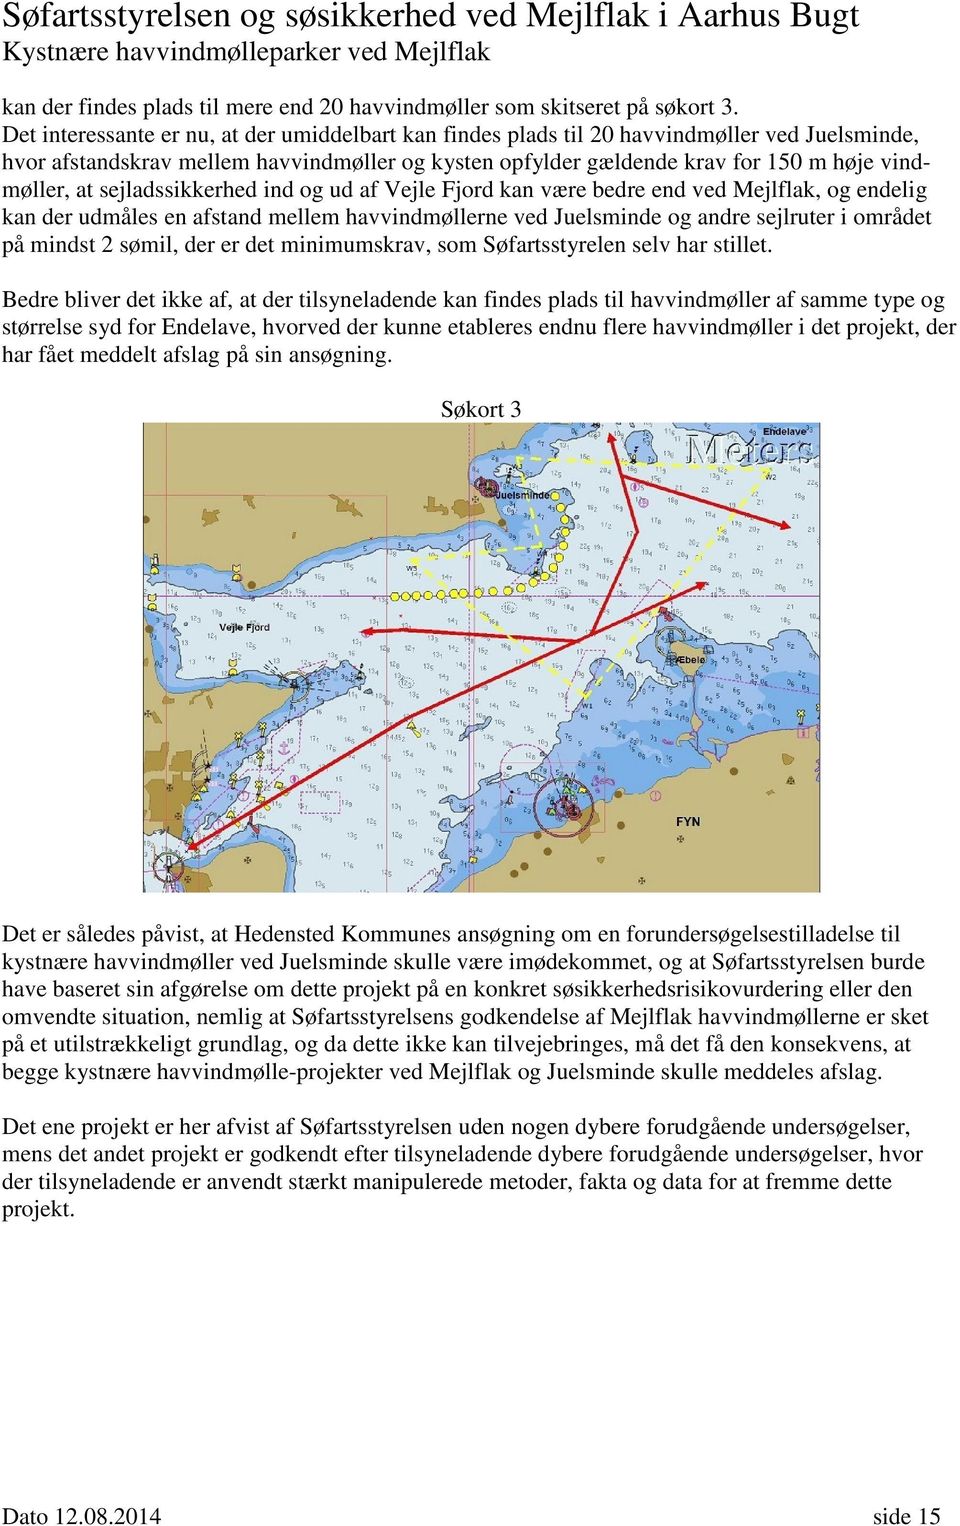 sejladssikkerhed ind og ud af Vejle Fjord kan være bedre end ved Mejlflak, og endelig kan der udmåles en afstand mellem havvindmøllerne ved Juelsminde og andre sejlruter i området på mindst 2 sømil,